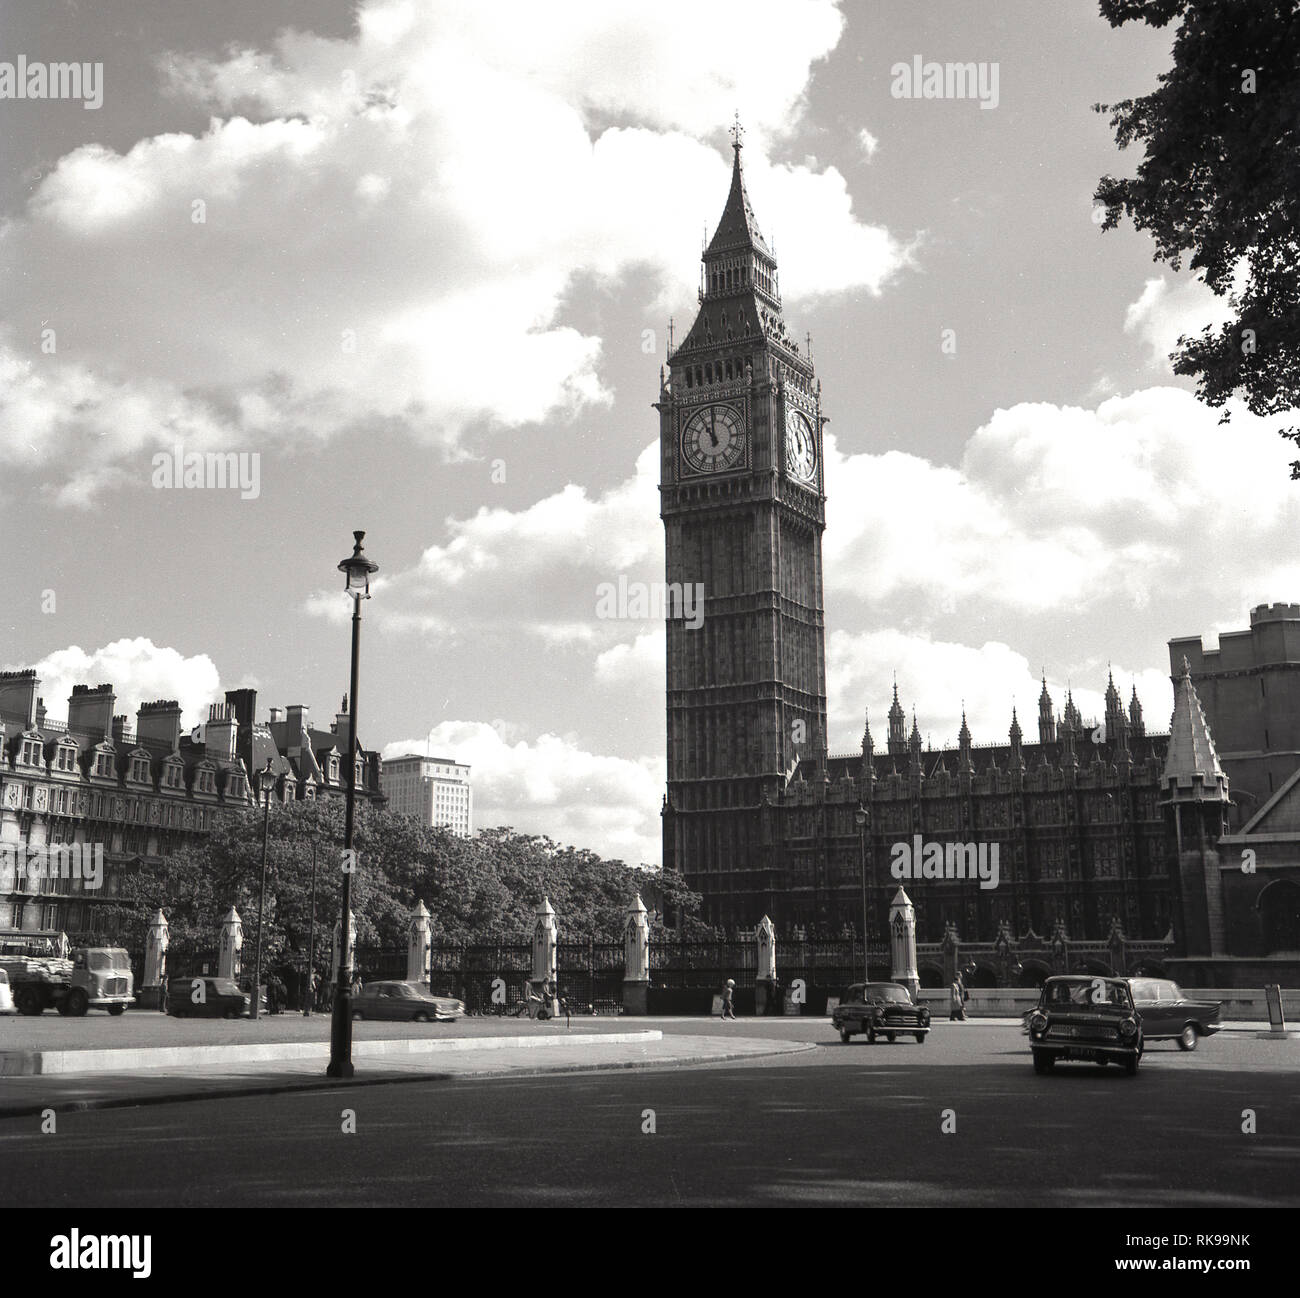 Années 1960, historiques, l'automobile passe autour de la place du Parlement à côté de l'Elizabeth ou Tour de l'horloge, il était autrefois connu, à l'extrémité nord du Palais de Westminster, la maison du gouvernement du Royaume-Uni. Conçu par Sir John Barry en 1868, la place du Parlement de Bretagne est devenu premier rond-point en 1926. La tour, également appelé 'Big Ben', a été conçue par Augustus Pugin, architecte anglais connu pour son travail dans le style néo-gothique de l'architecture et une fois achevée en 1859 a été le plus grand carillon réveil dans le monde. Banque D'Images